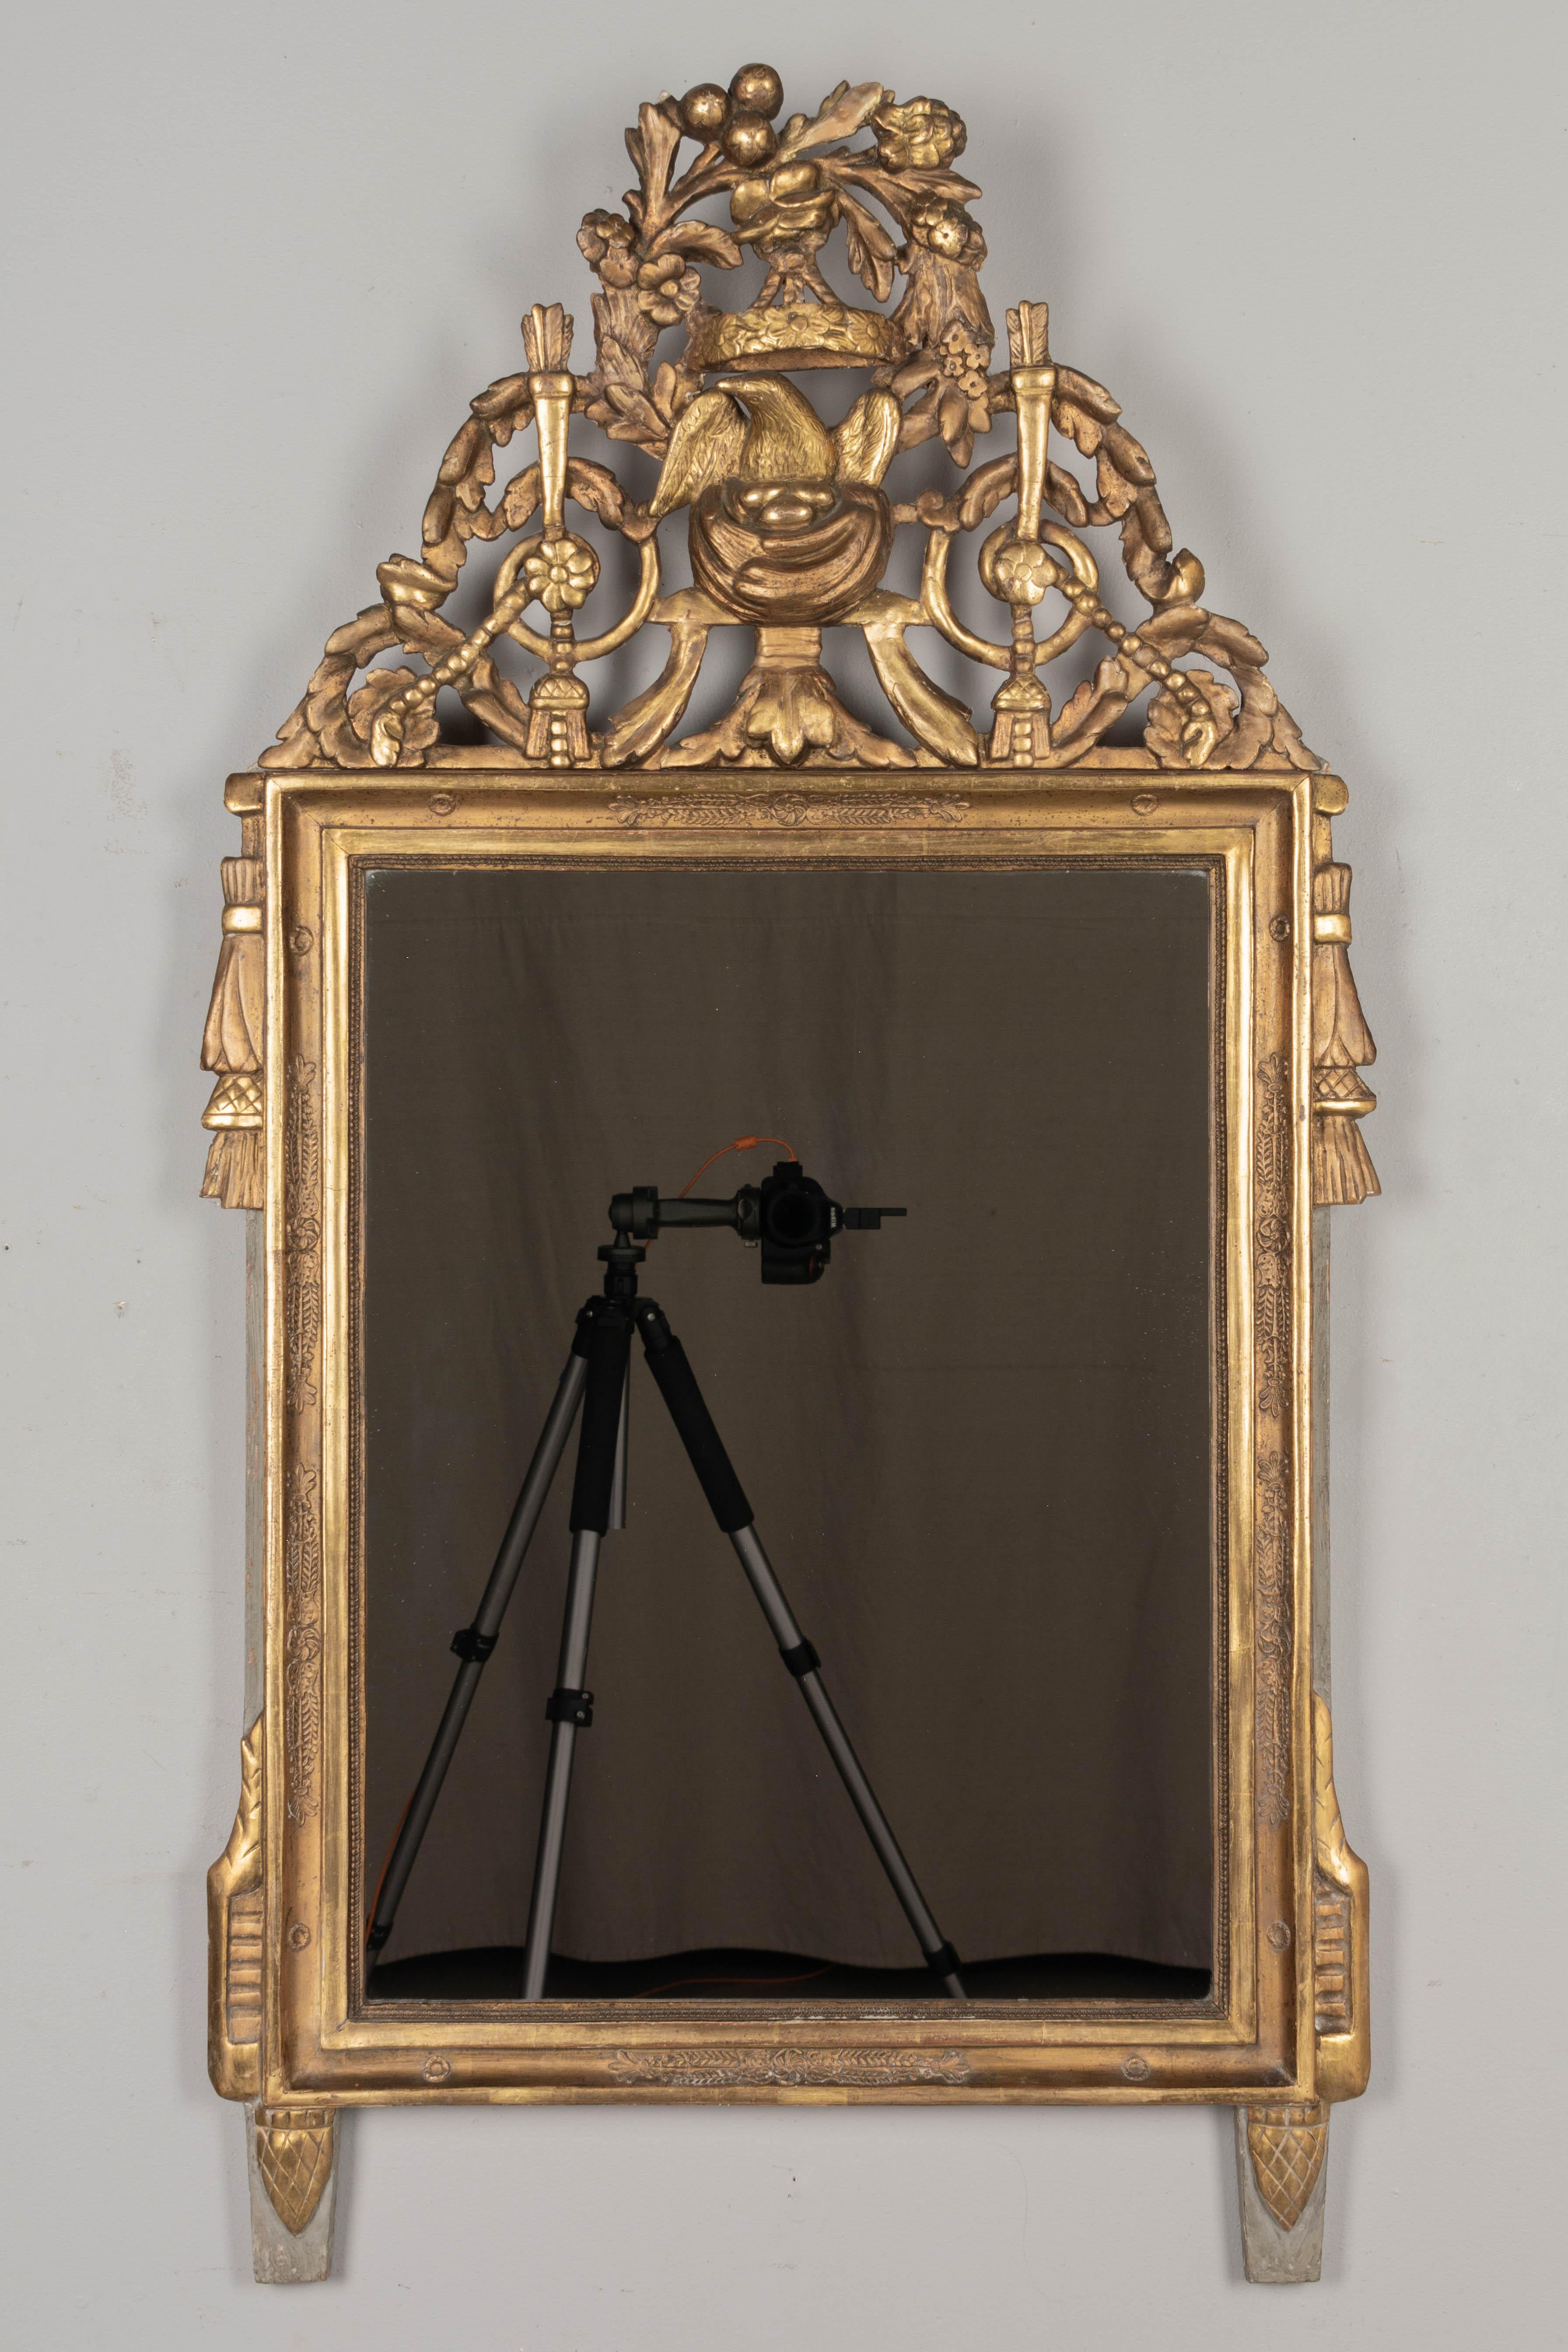 Miroir de style Louis XVI de la fin du XVIIIe siècle. Cimier sculpté en trois dimensions avec un nid d'oiseau sous une couronne florale entourée de guirlandes. Magnifiquement détaillé. Bord extérieur et pieds peints en vert-de-gris pâle.